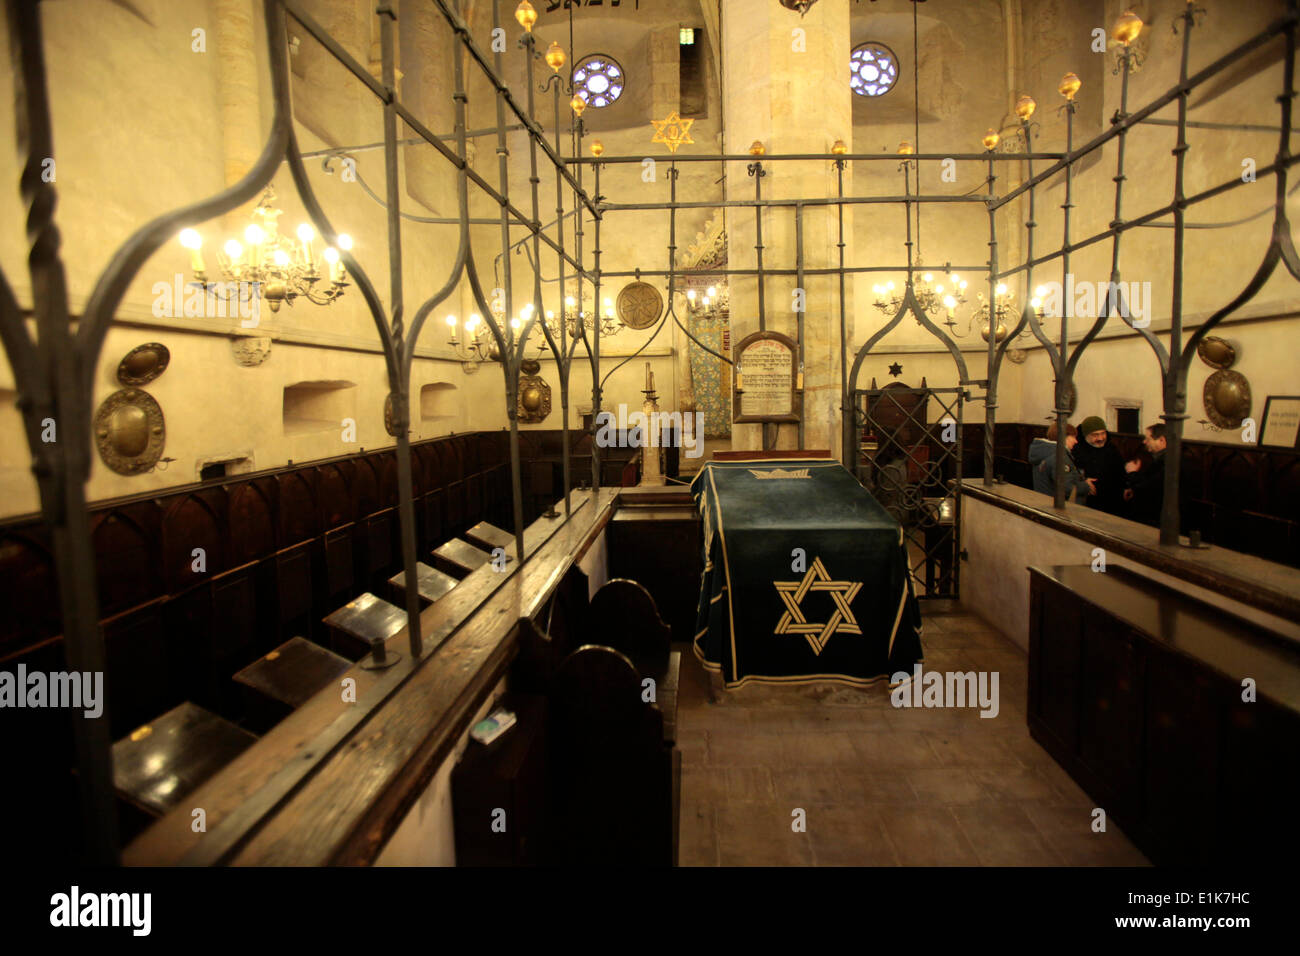 L'intérieur de la Synagogue Vieille-Nouvelle, la plus ancienne synagogue d'Europe, construit autour de 1270. Banque D'Images